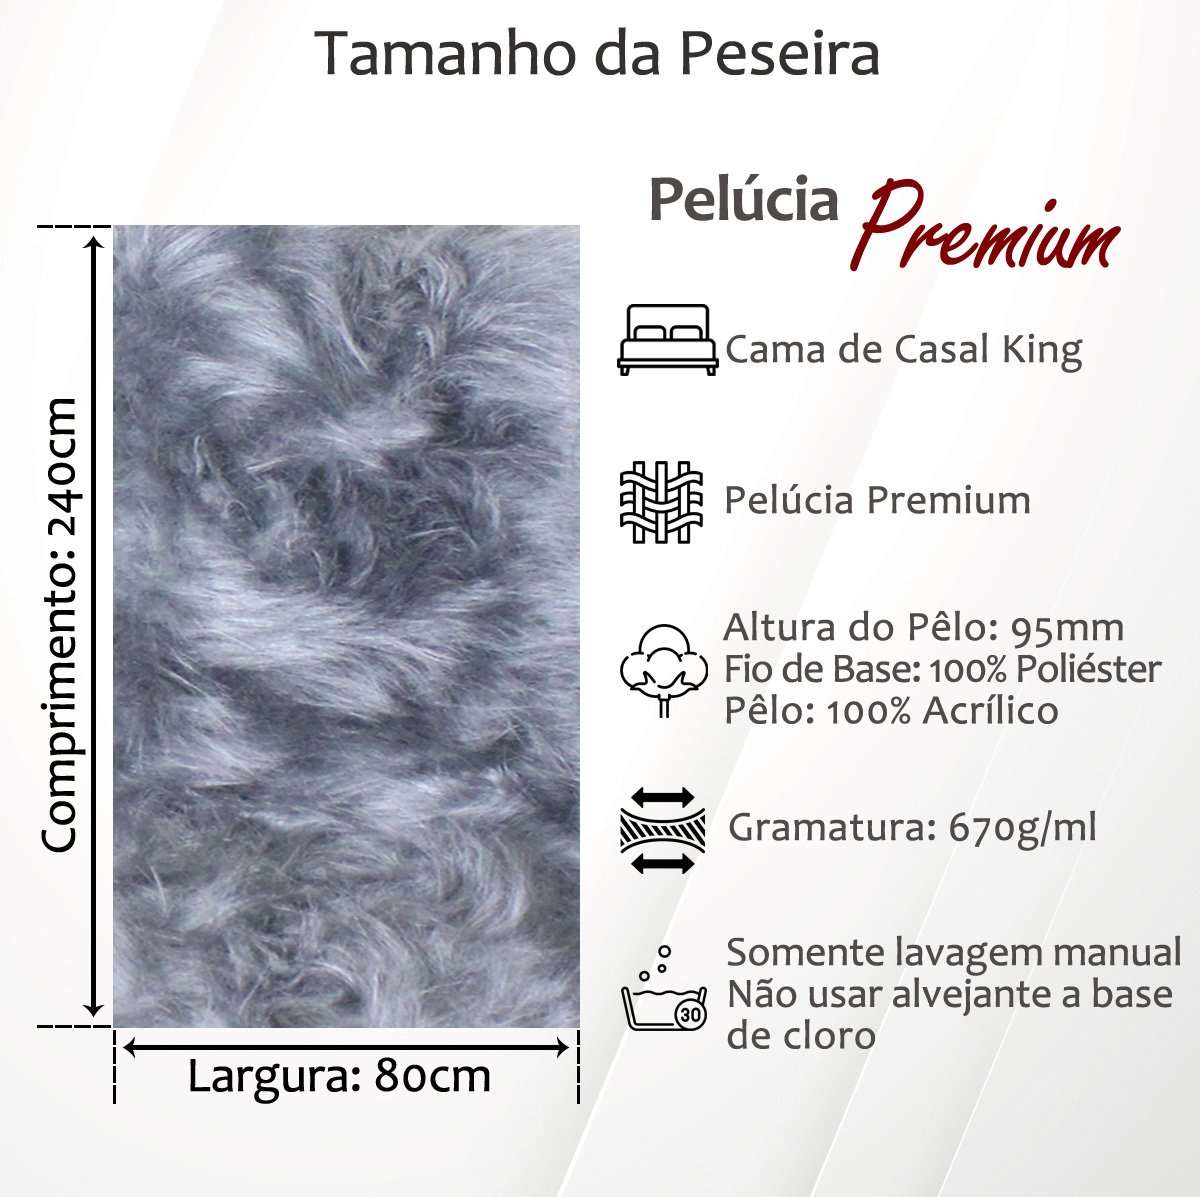 Peseira Premium Pelúcia Pelo Alto Cama Casal King Size 2,4mx80cm + 2 Capas de Almofadas Pelúcia Prem - 4